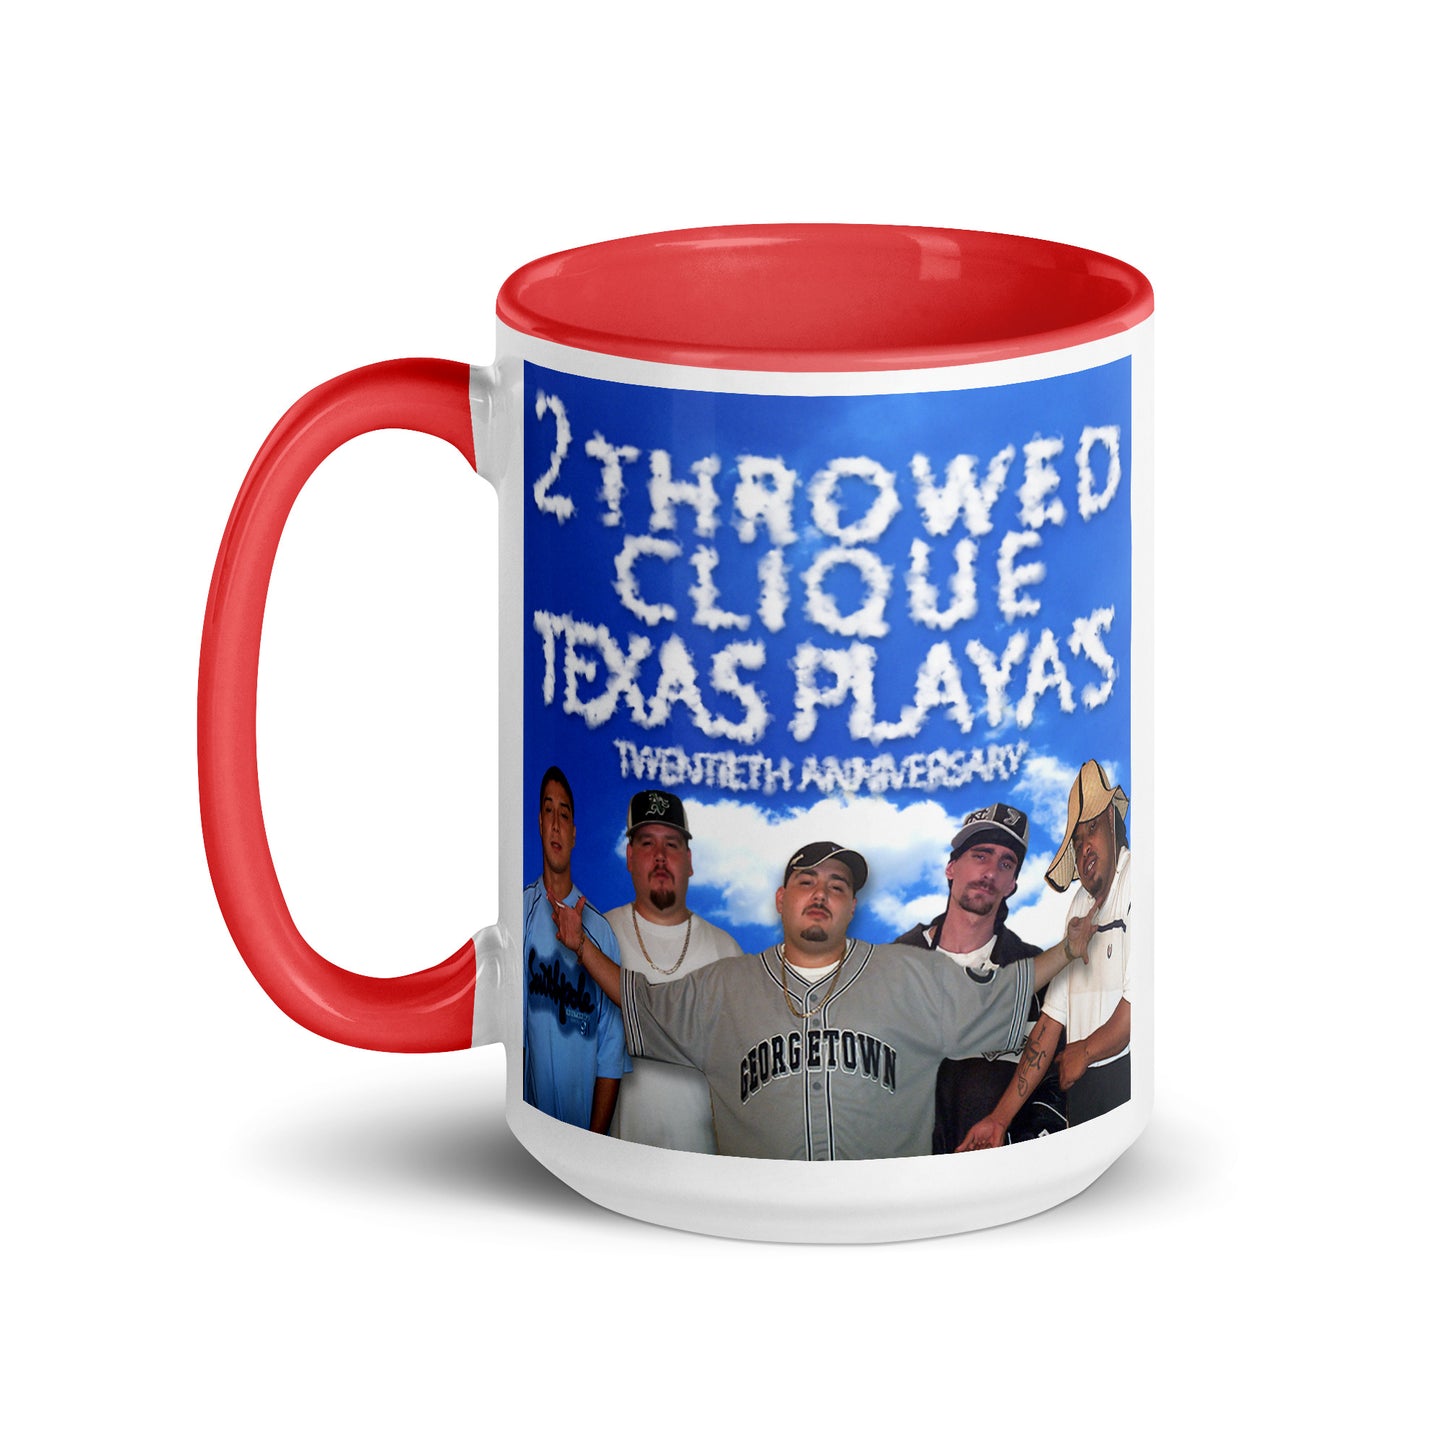 2 Throwed Clique - Texas Playas Mug With Color Inside